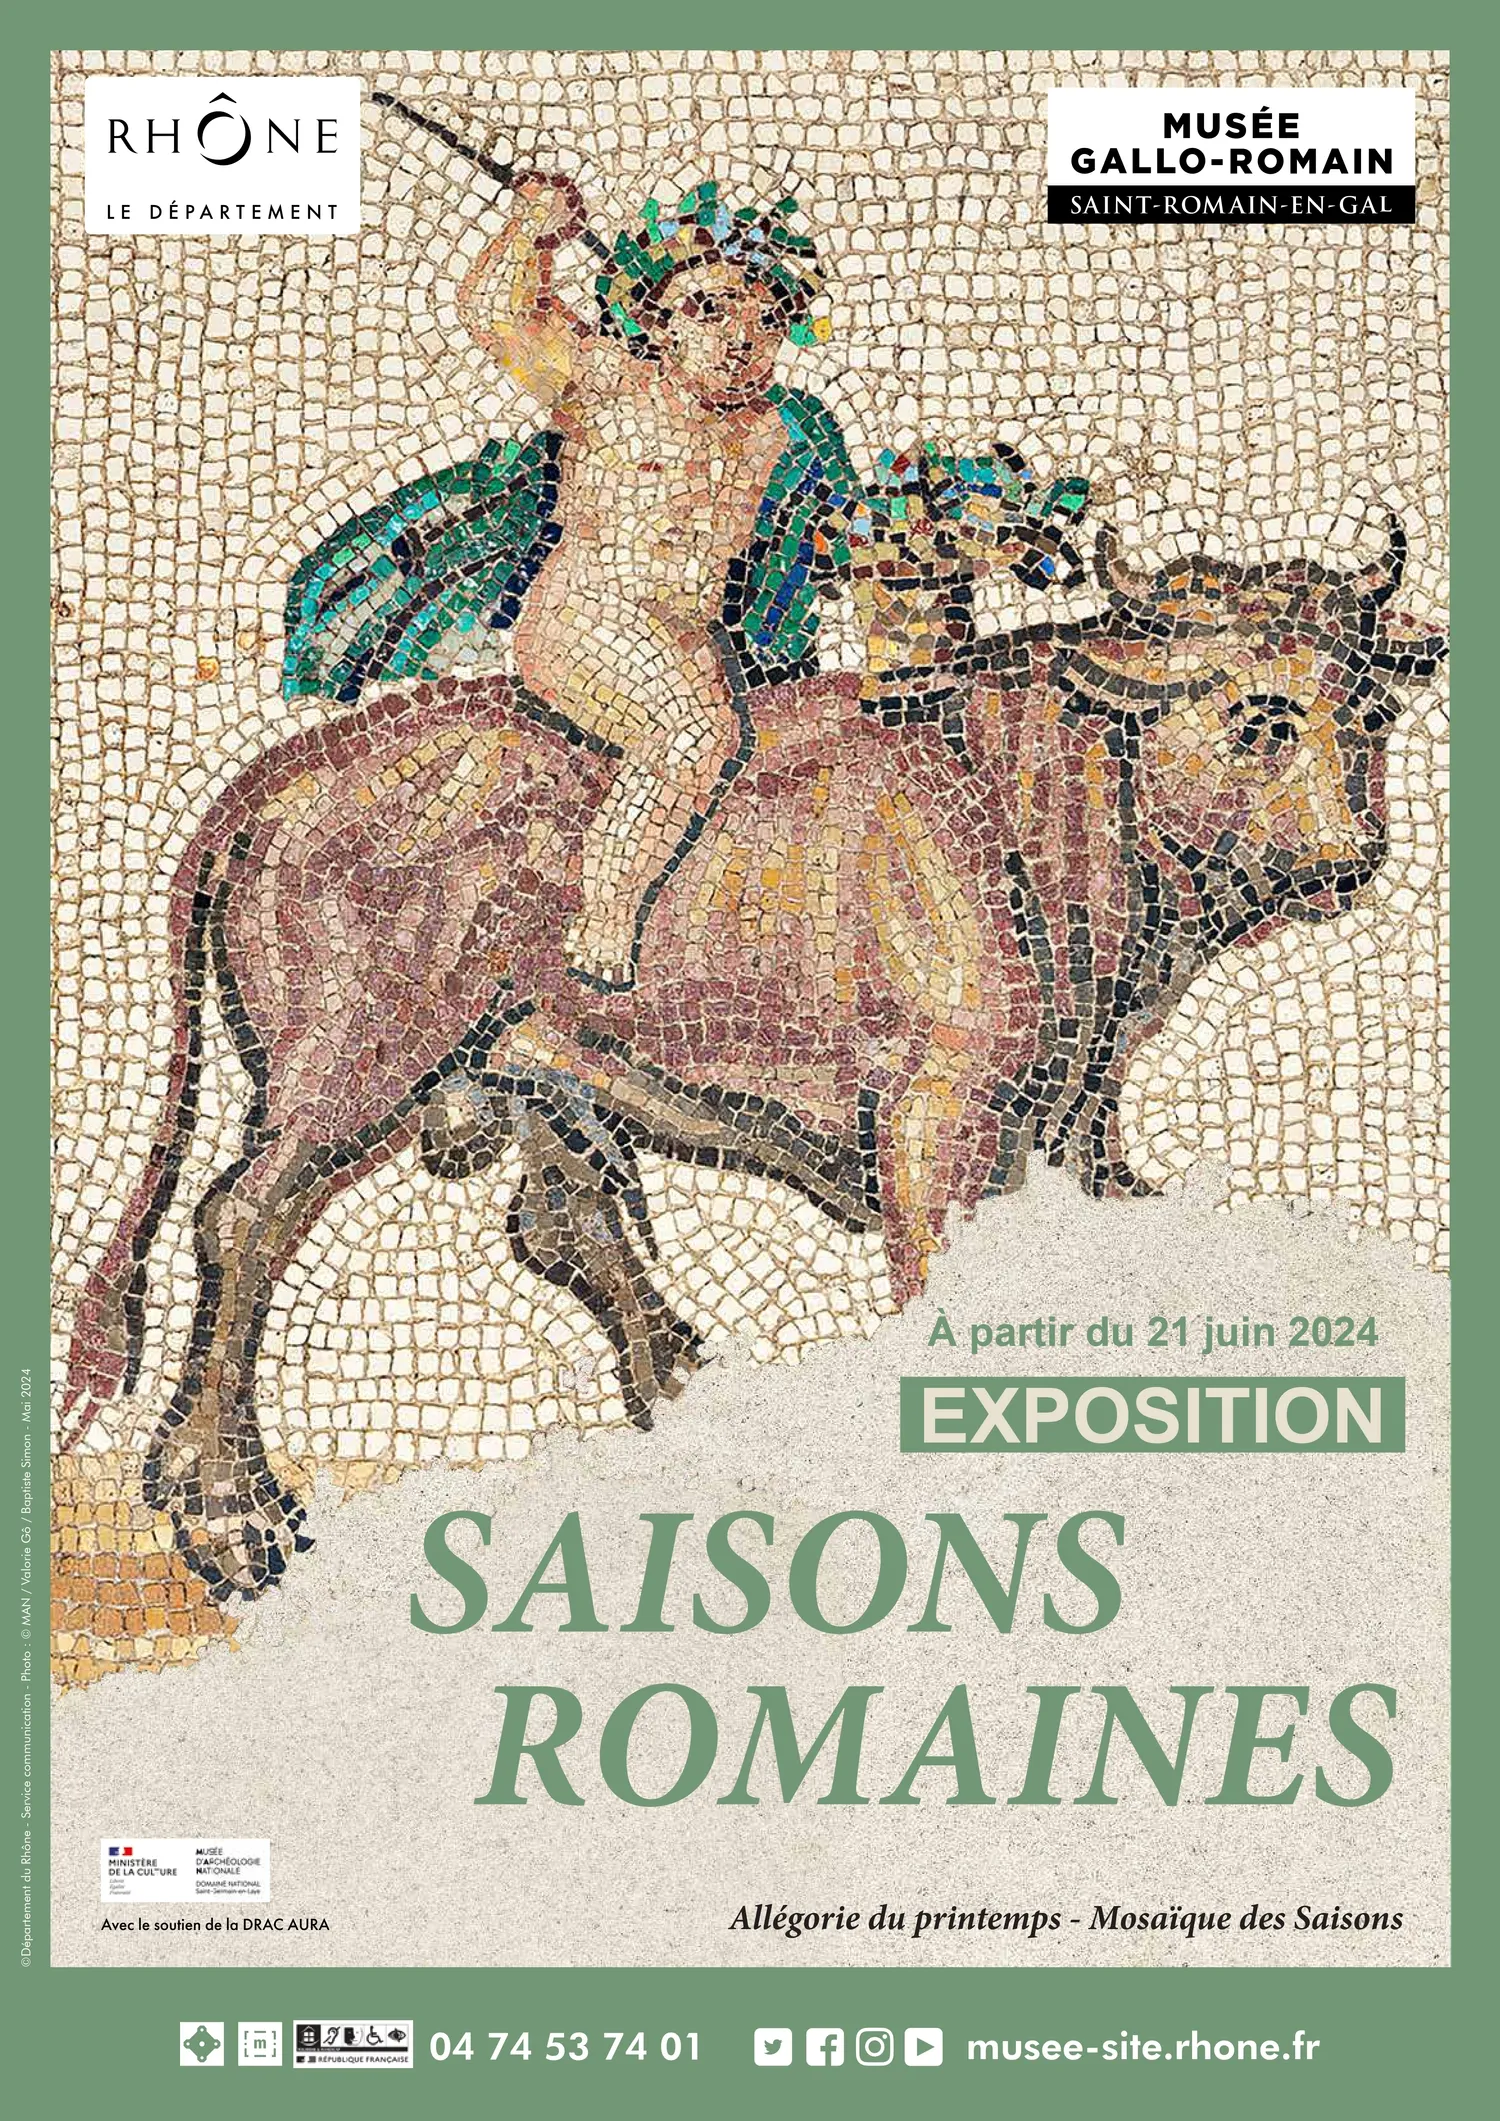 Image qui illustre: Visite flash de 20mn: présentation de l'exposition temporaire Saisons romaines à Saint-Romain-en-Gal - 0